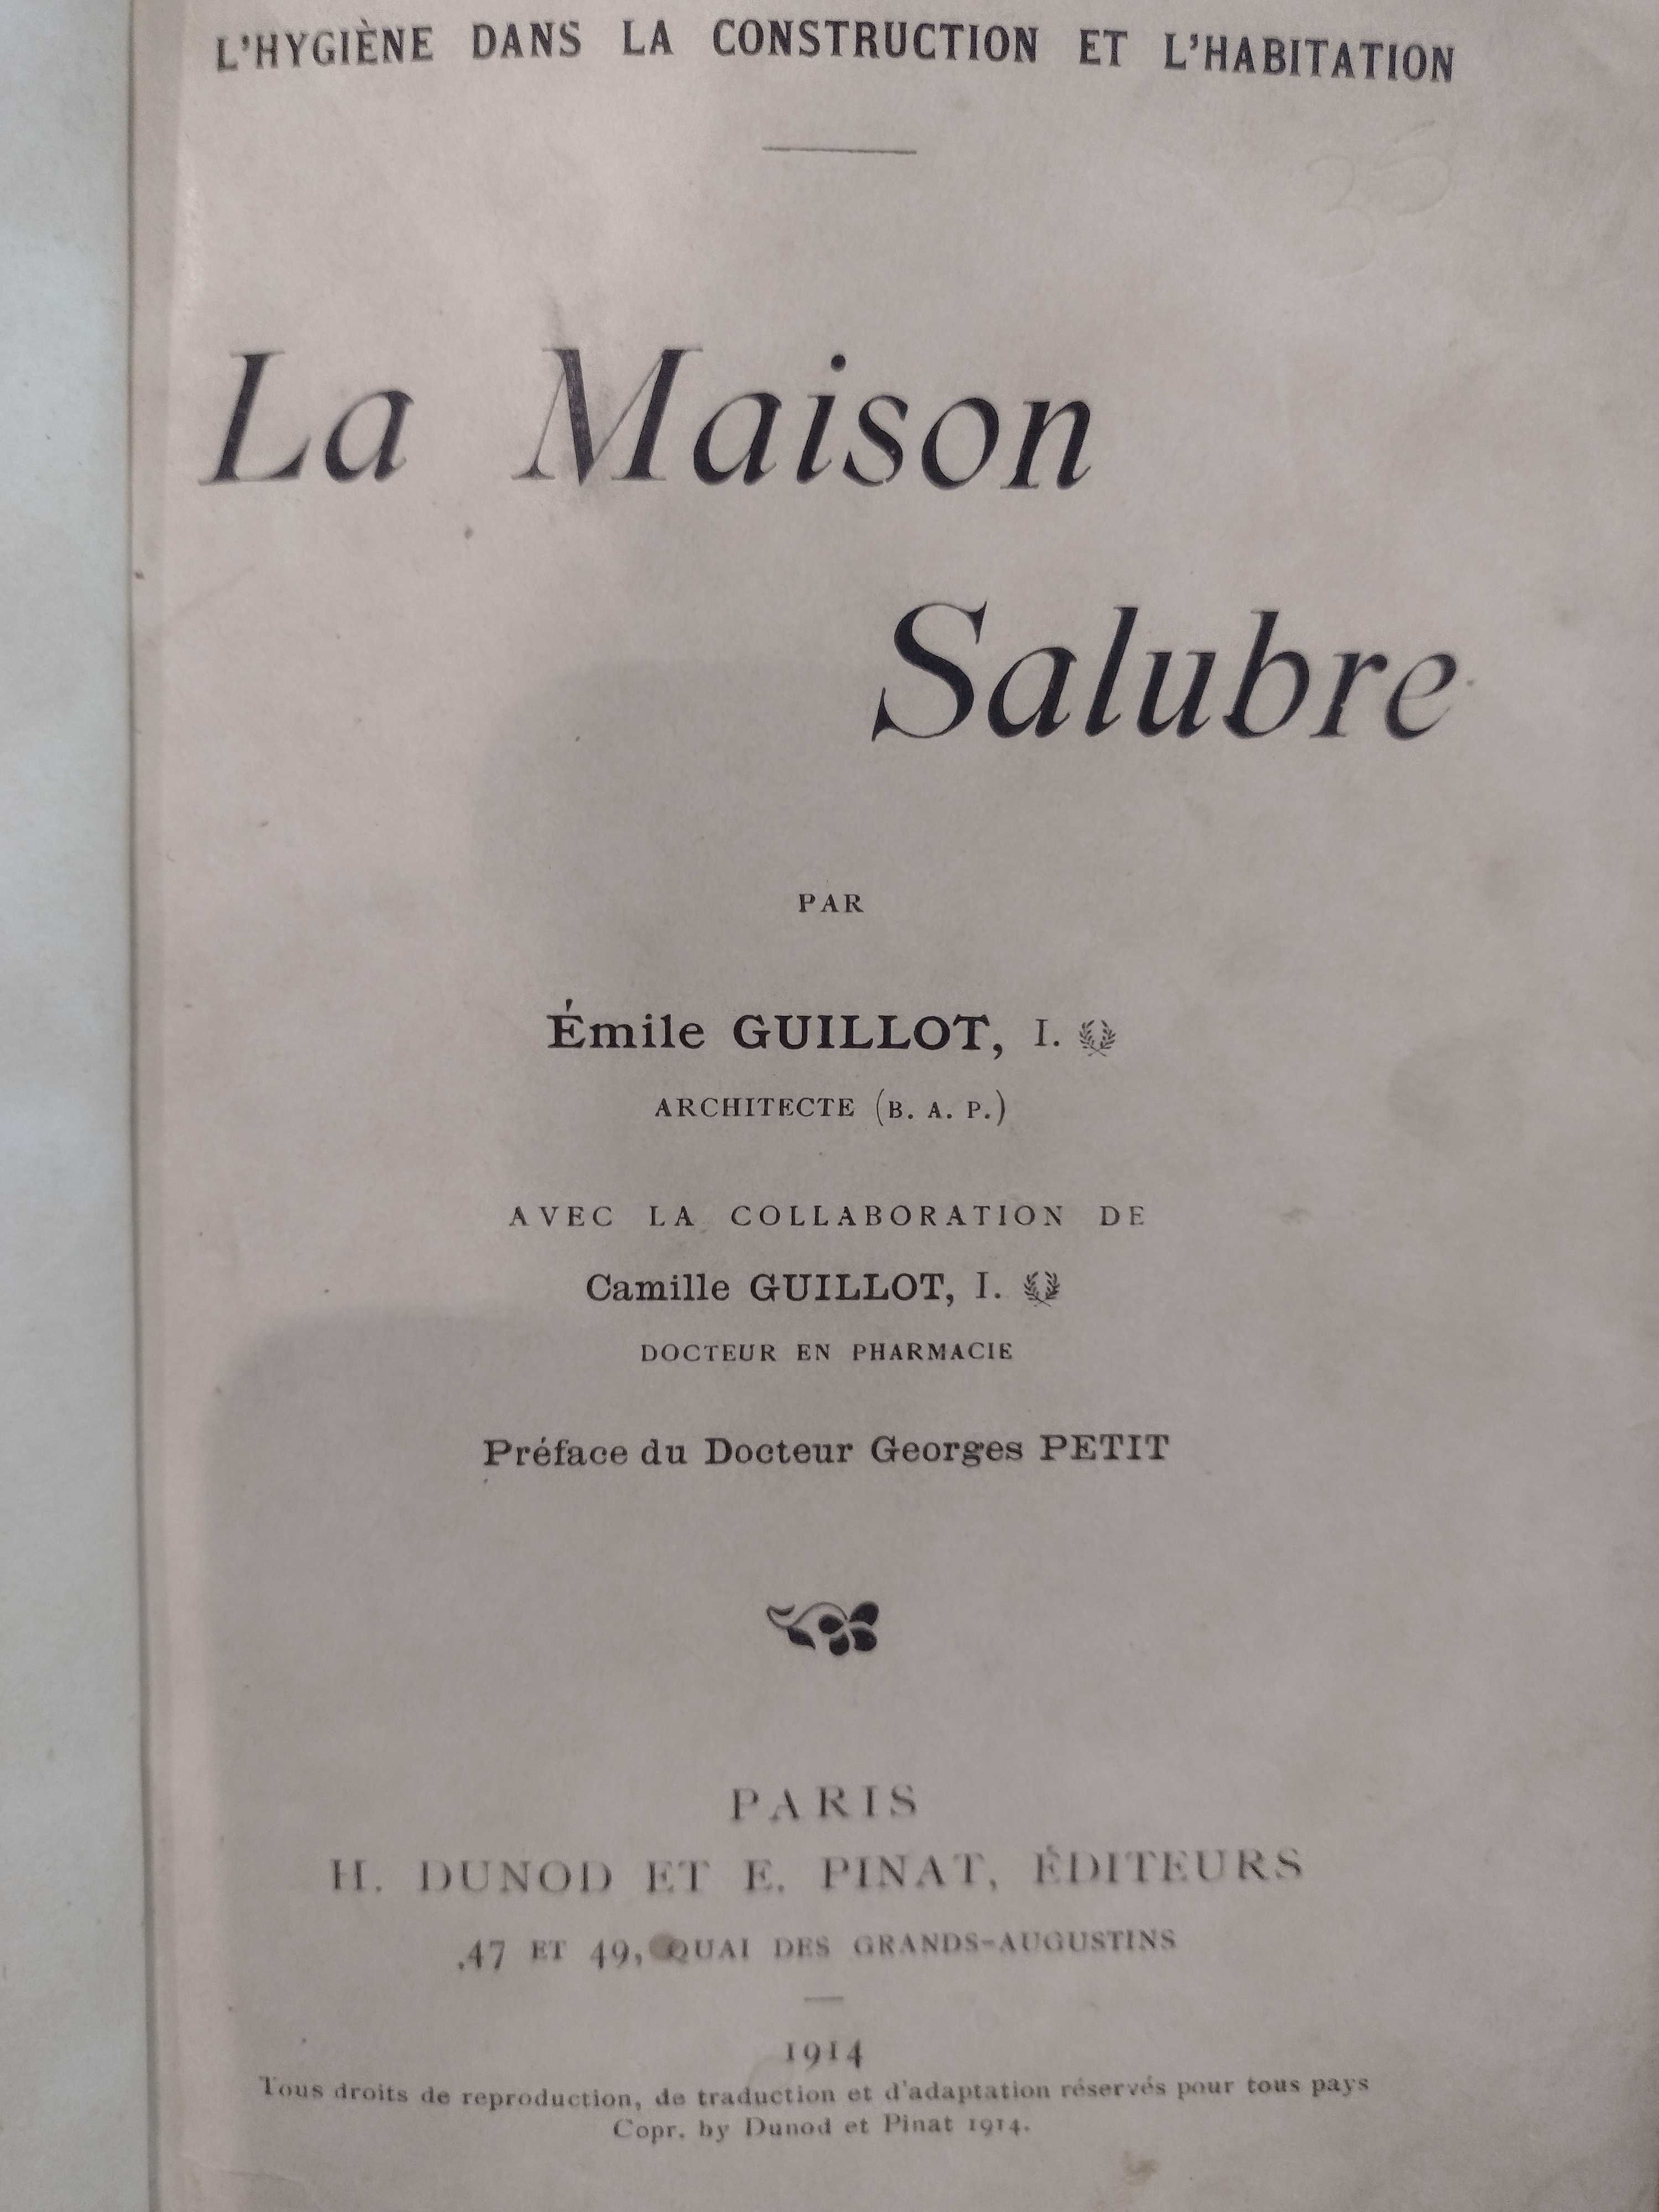 La Maison Salubre - Émile Guillot 1914